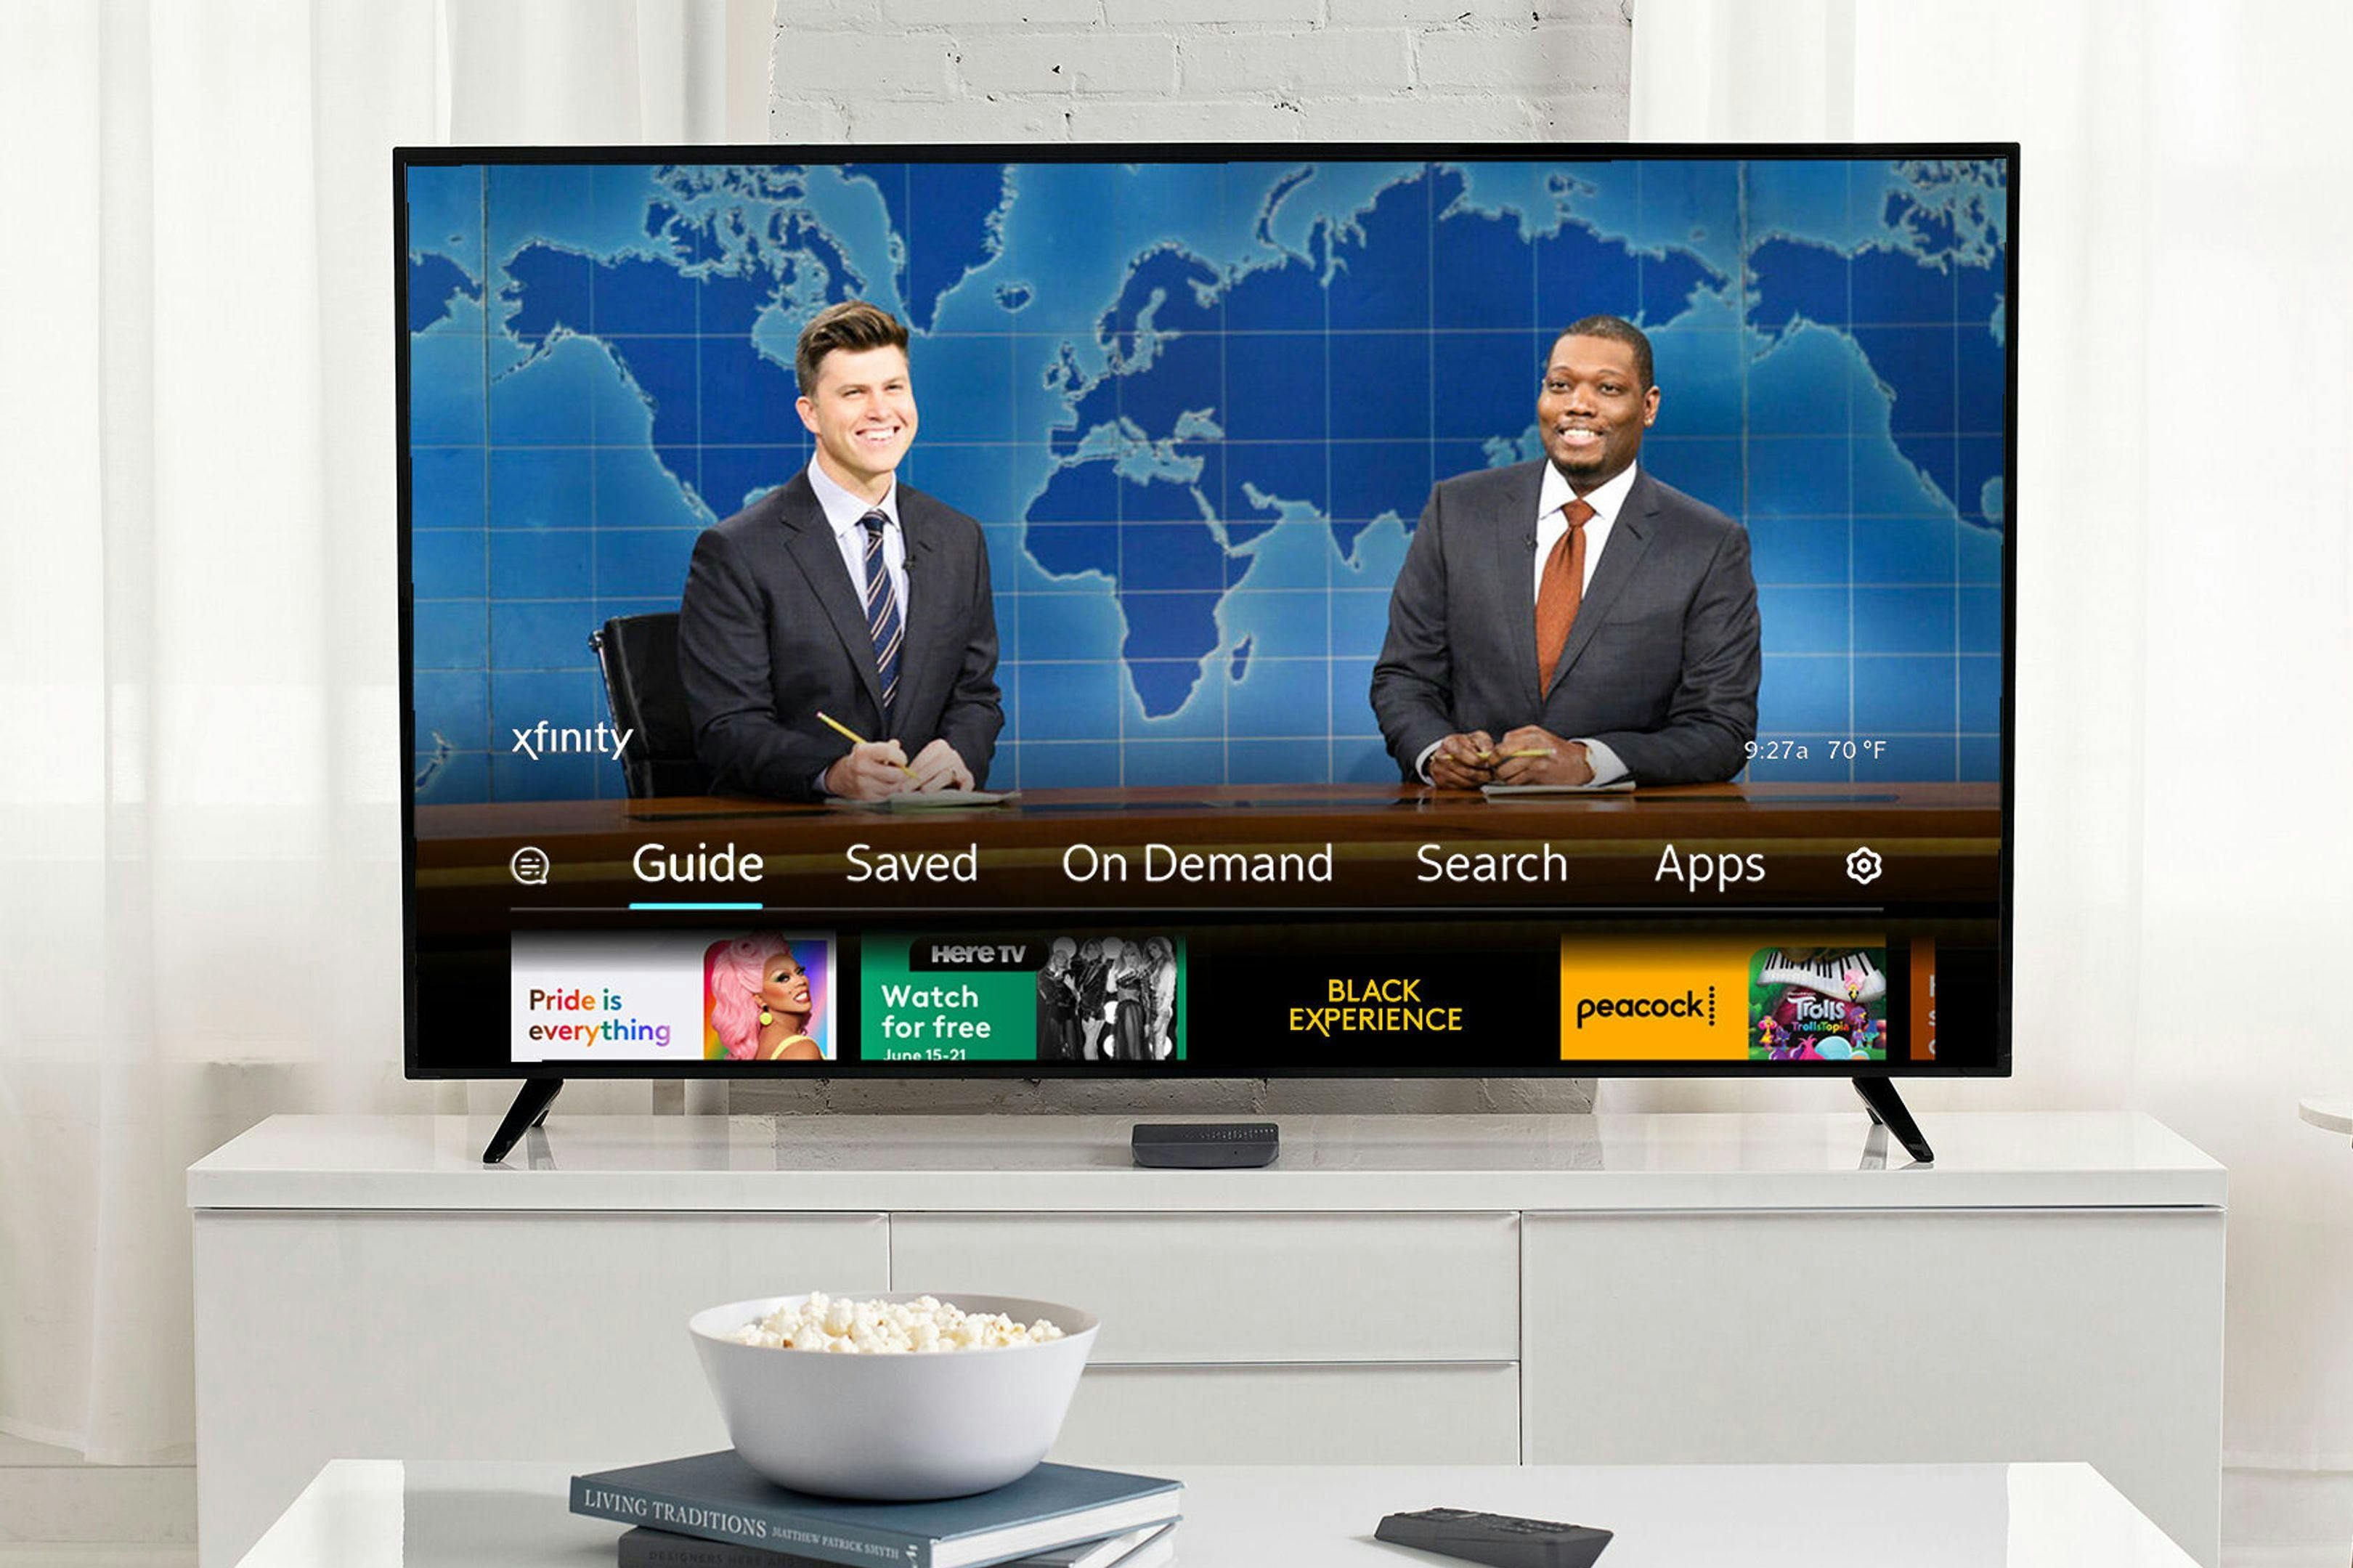 Imagen de recurso de Xfinity, empresa que ofrece servicios de televisión por cable, internet y telefonía en EEUU y que es parte de Comcast Corporation